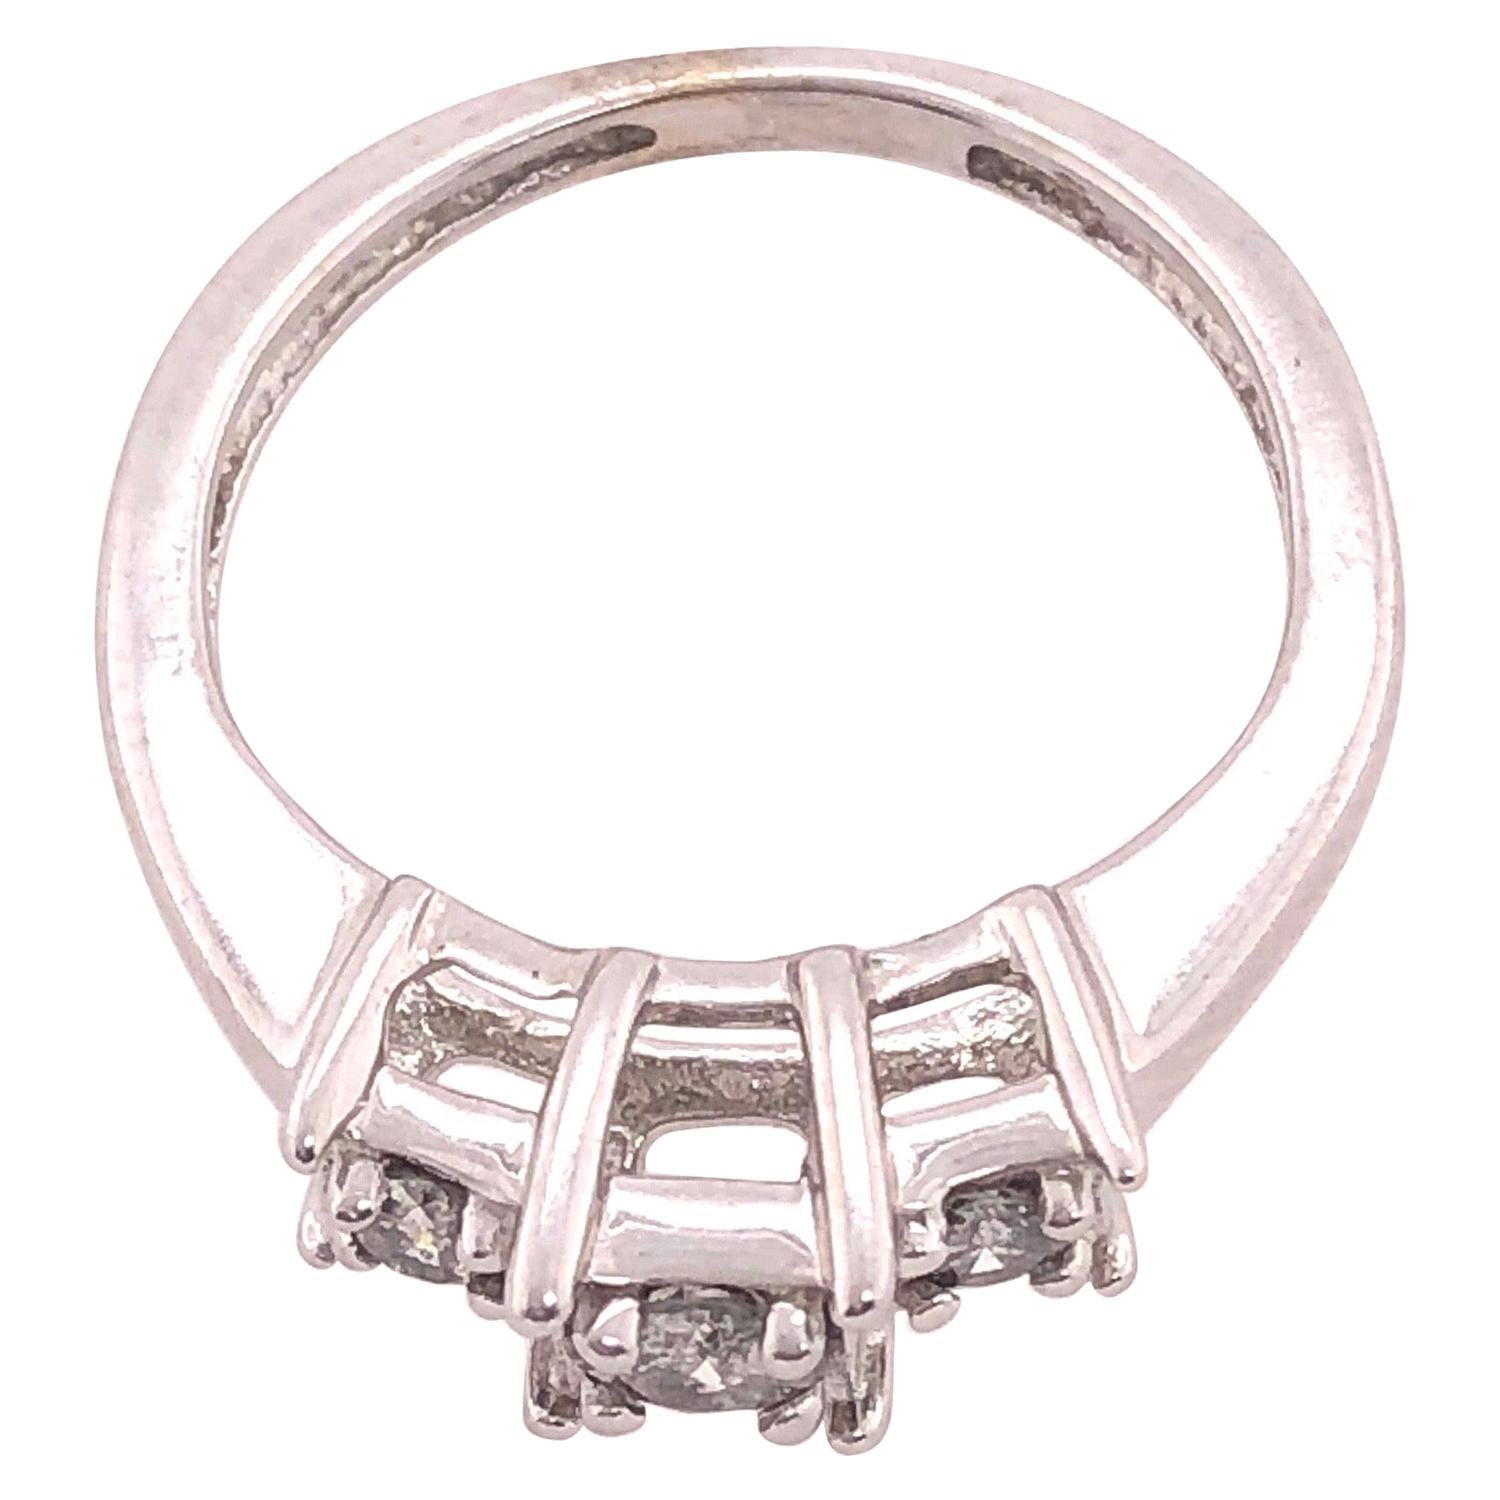 14 Karat White Gold Engagement Ring/Band Ring .78 Total Diamond Weight